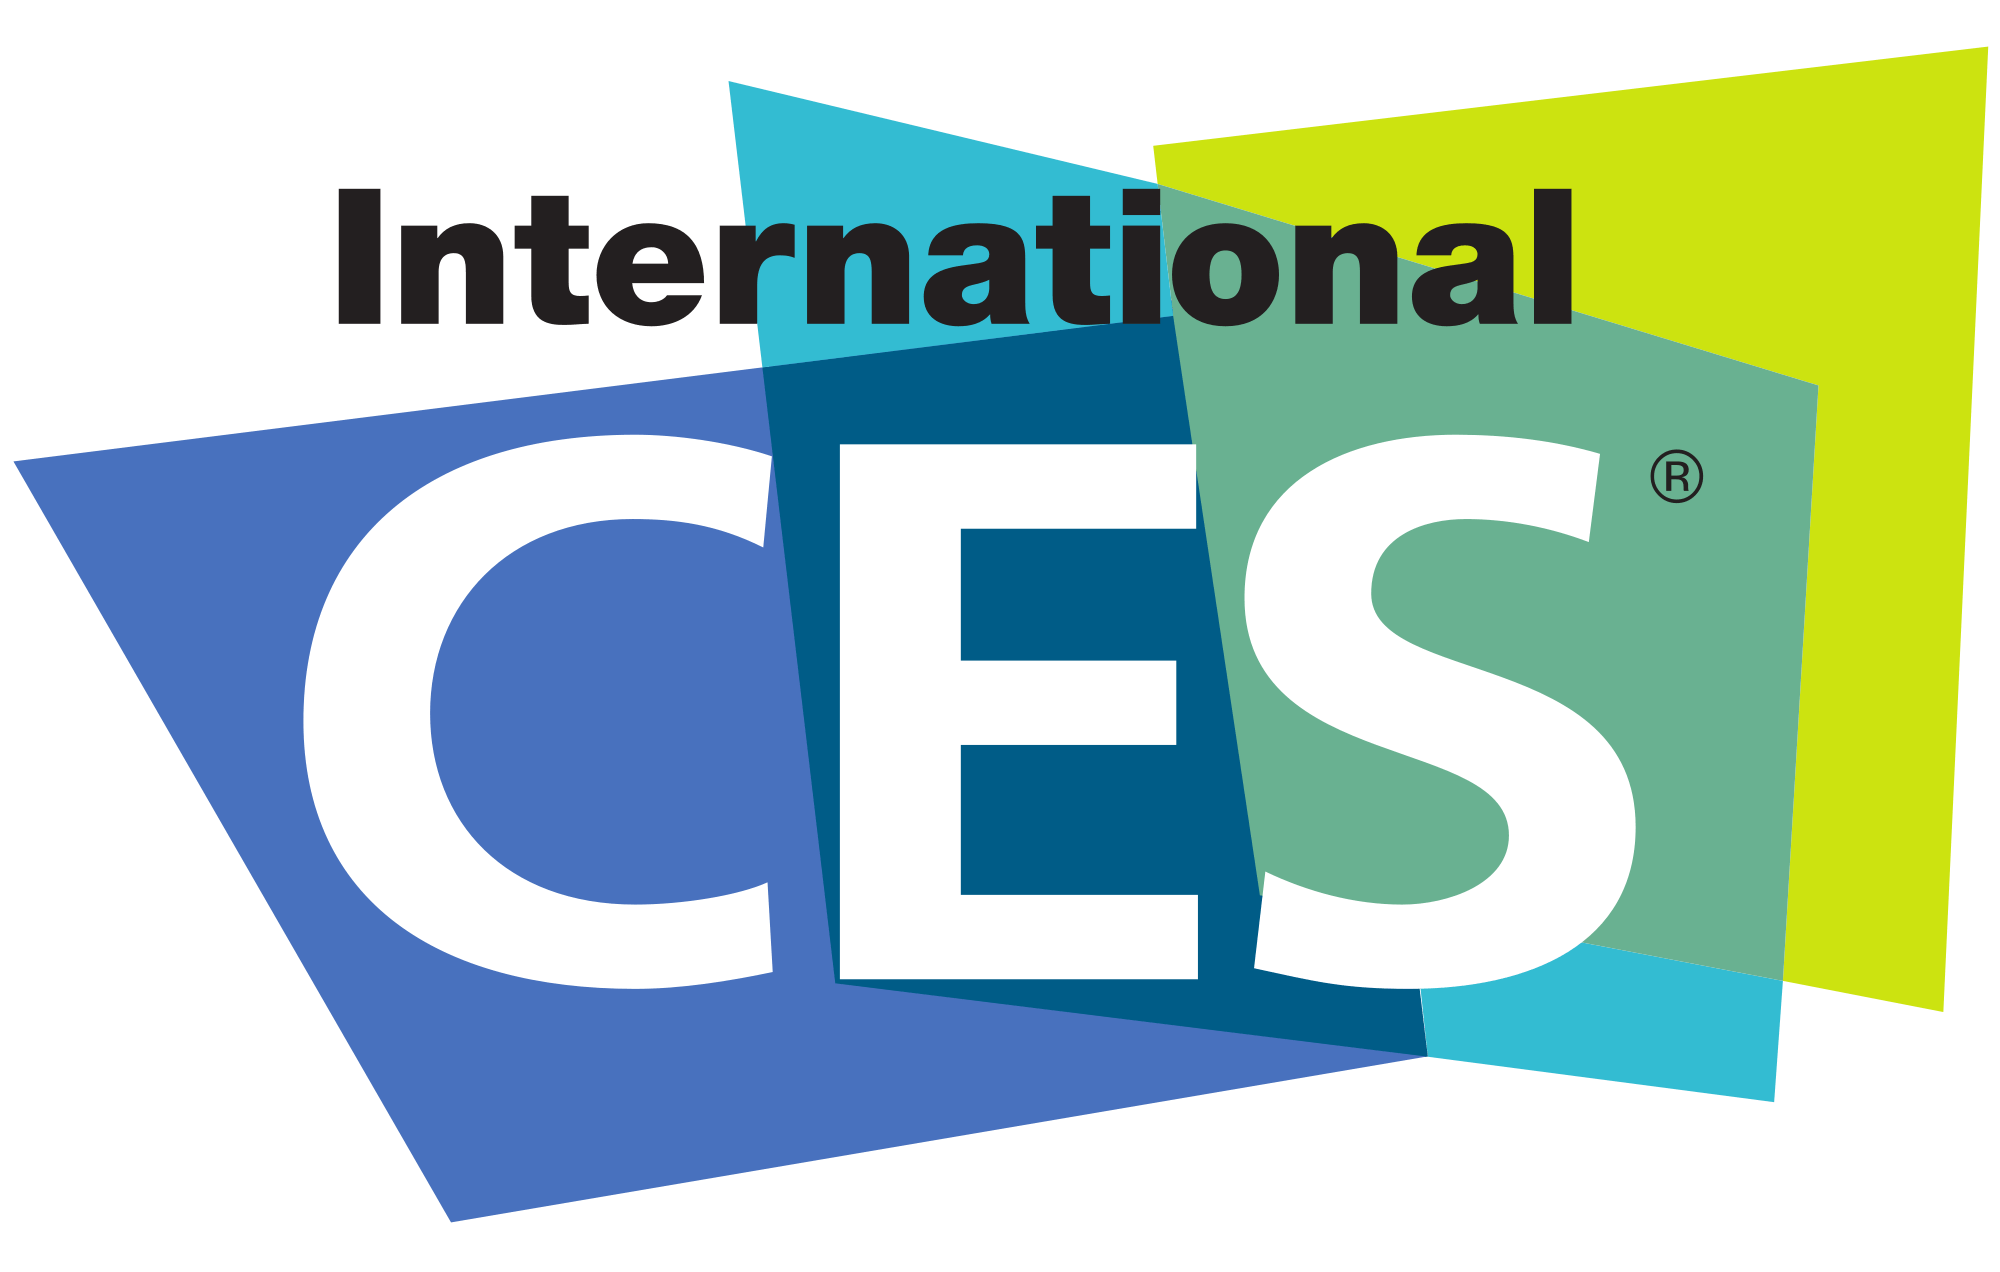 international ces logo - CES Logo 2017